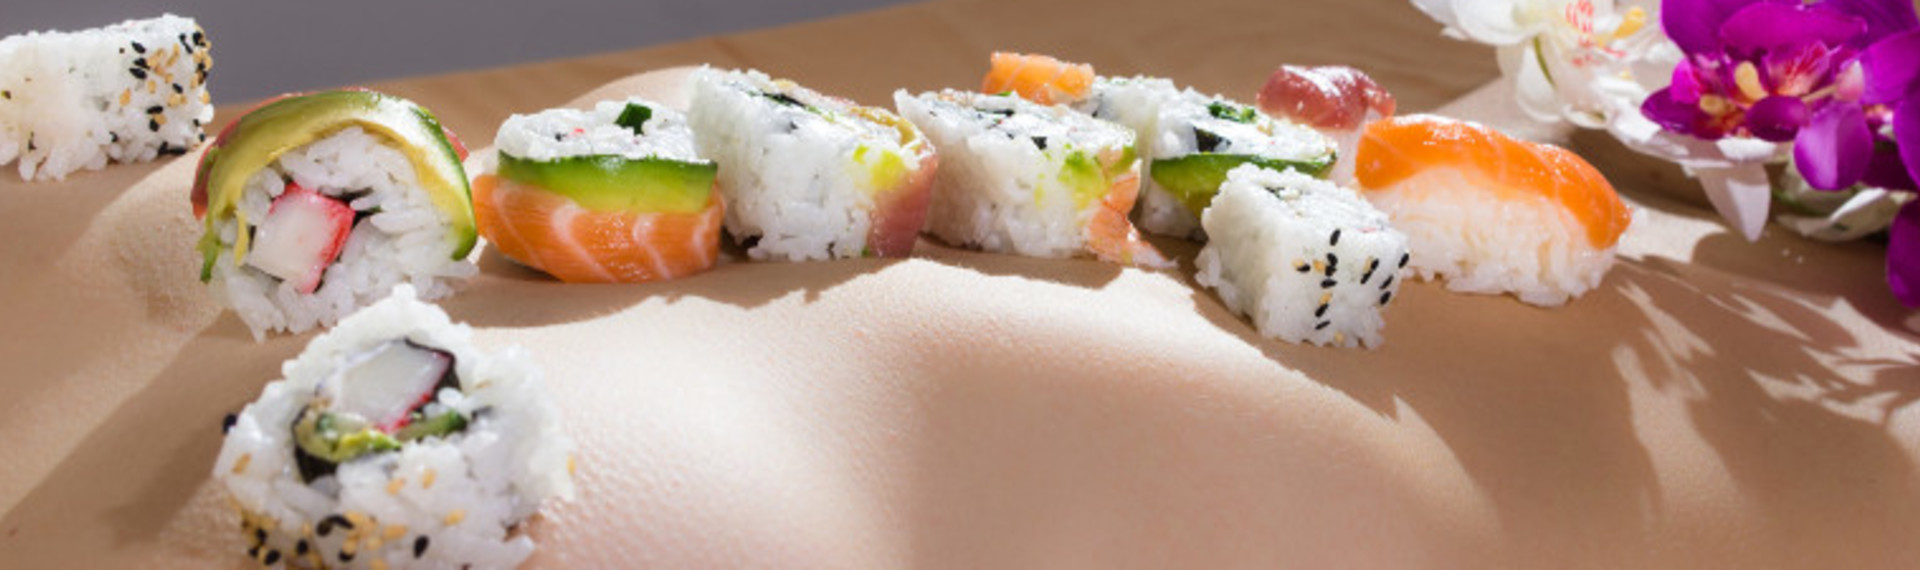 Nøgen sushi - Tilberedt af en kok, spist på en babe